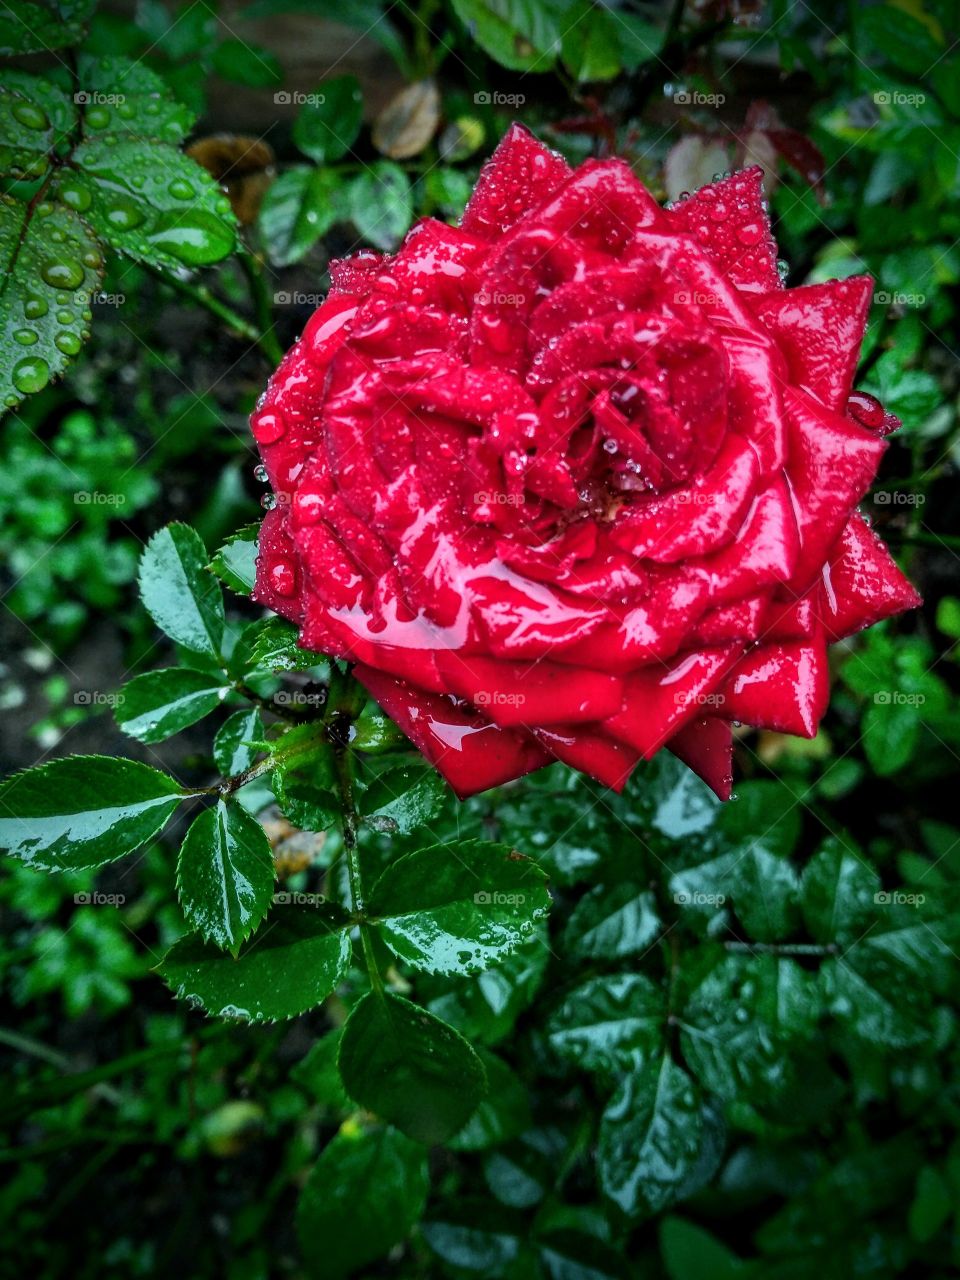 Wet red rose... Rosa vermelha molhada...